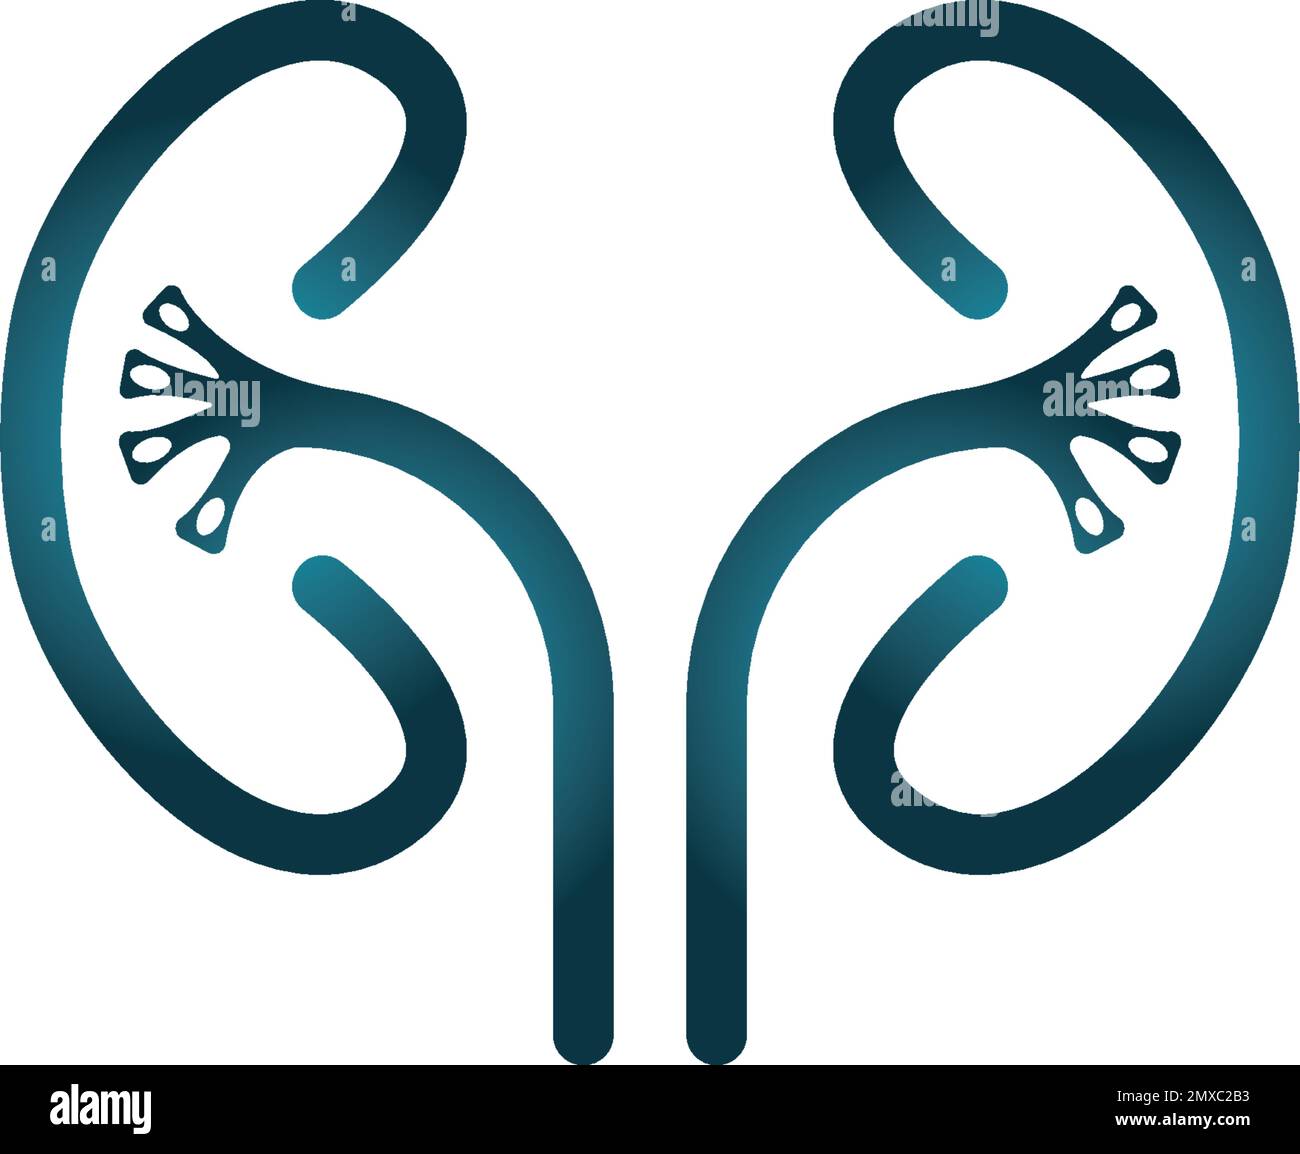 Kidney icon vector. Urology logo design template. Stock Vector